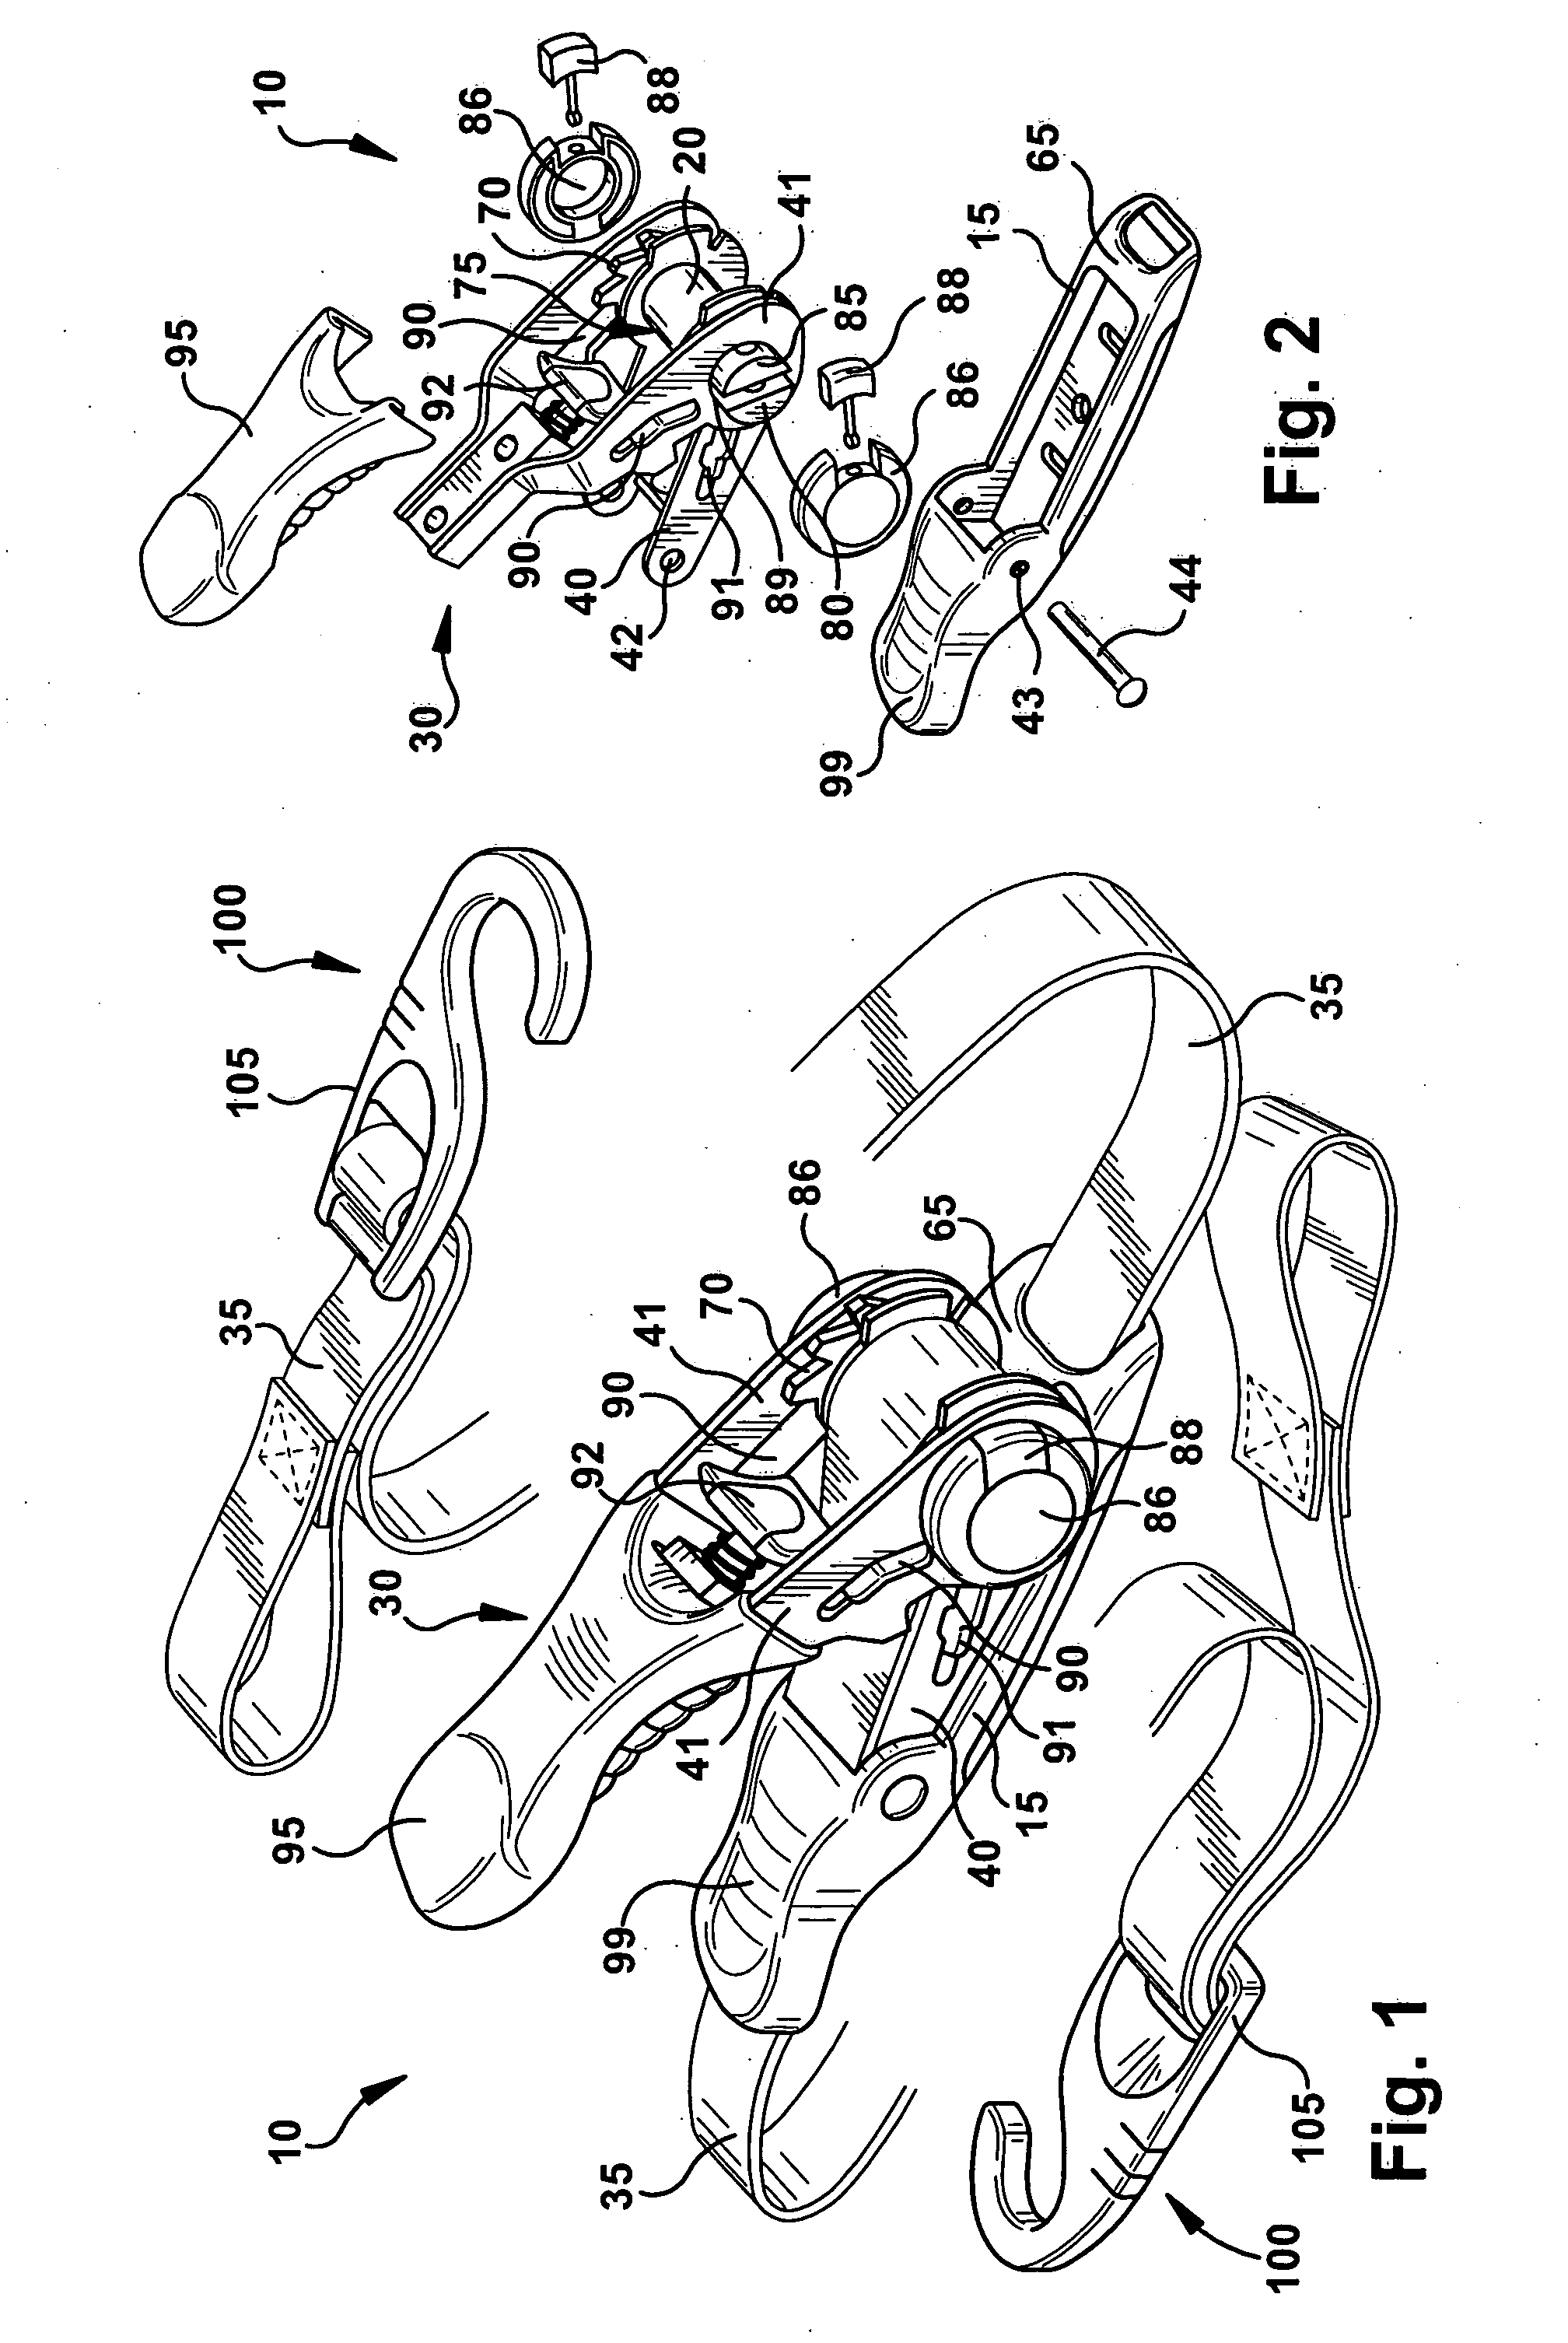 Ratchet mechanism